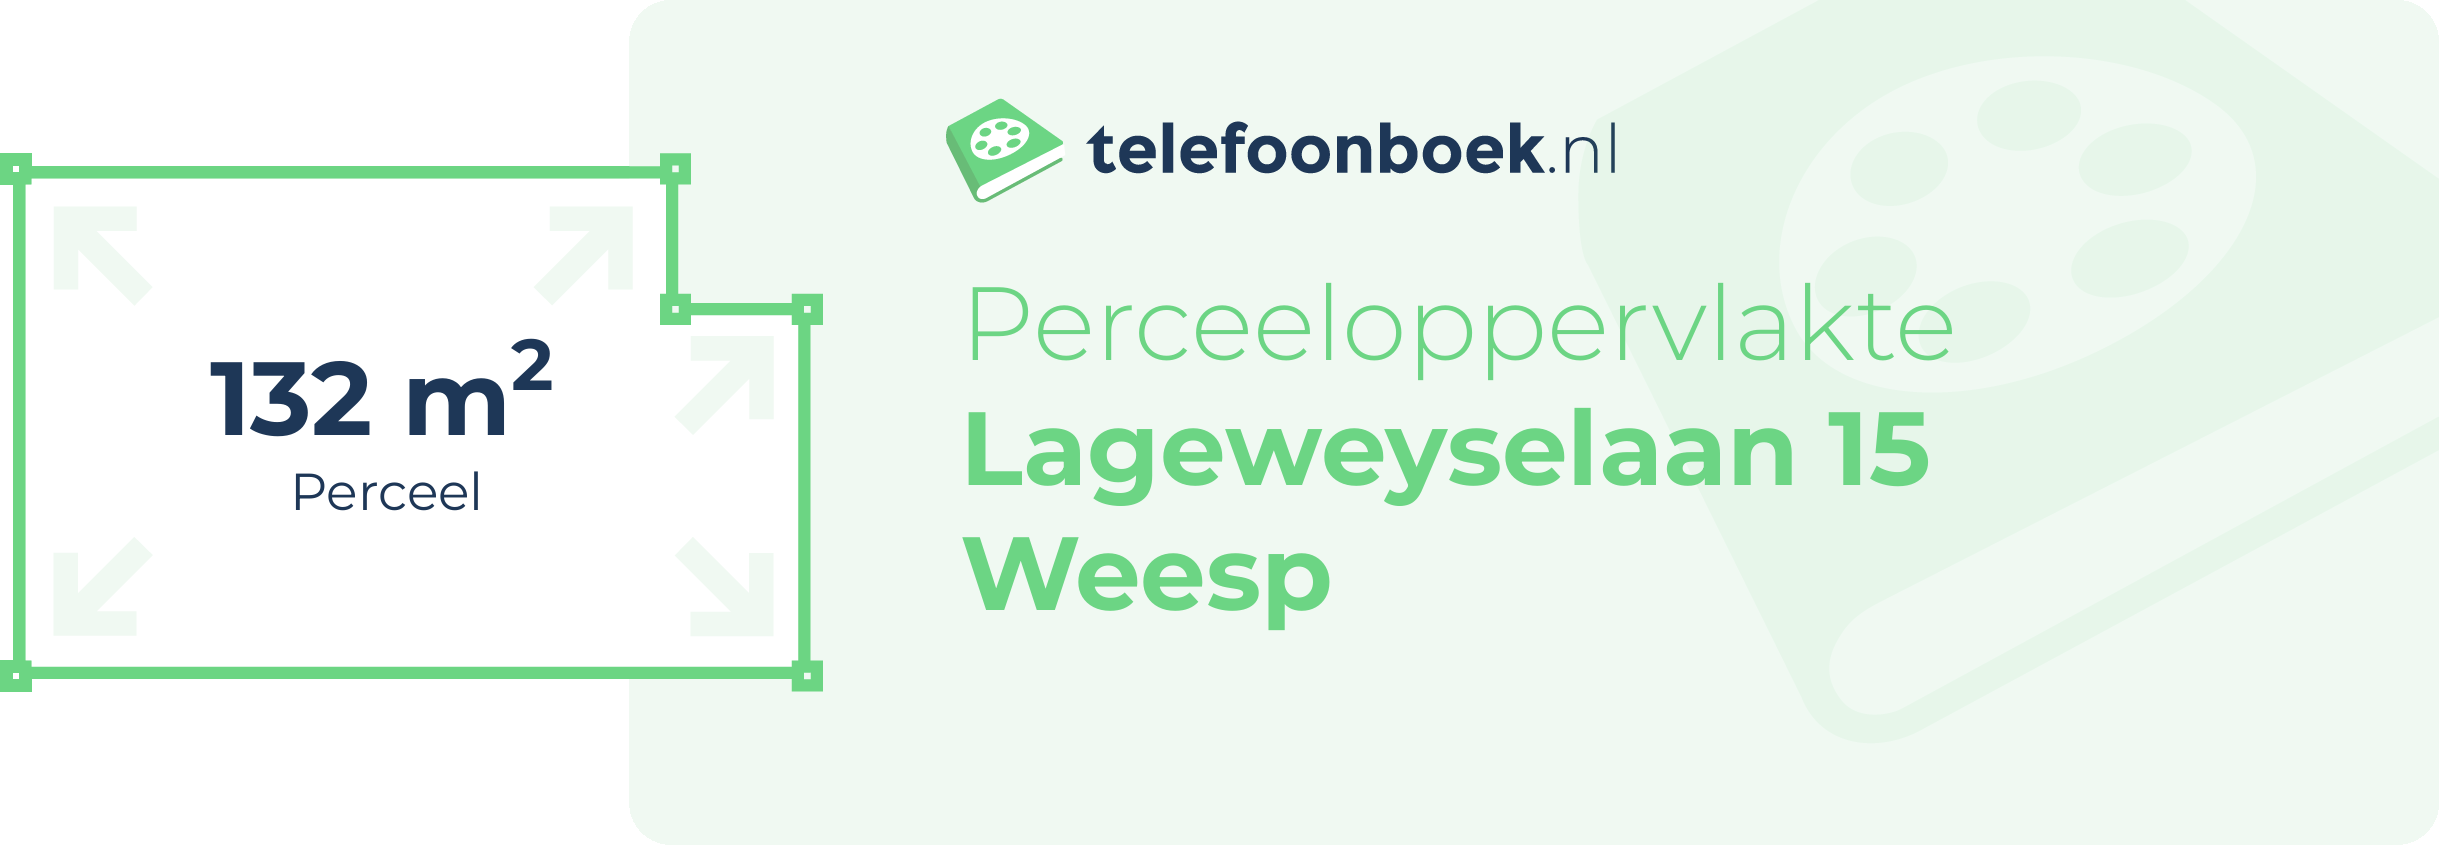 Perceeloppervlakte Lageweyselaan 15 Weesp